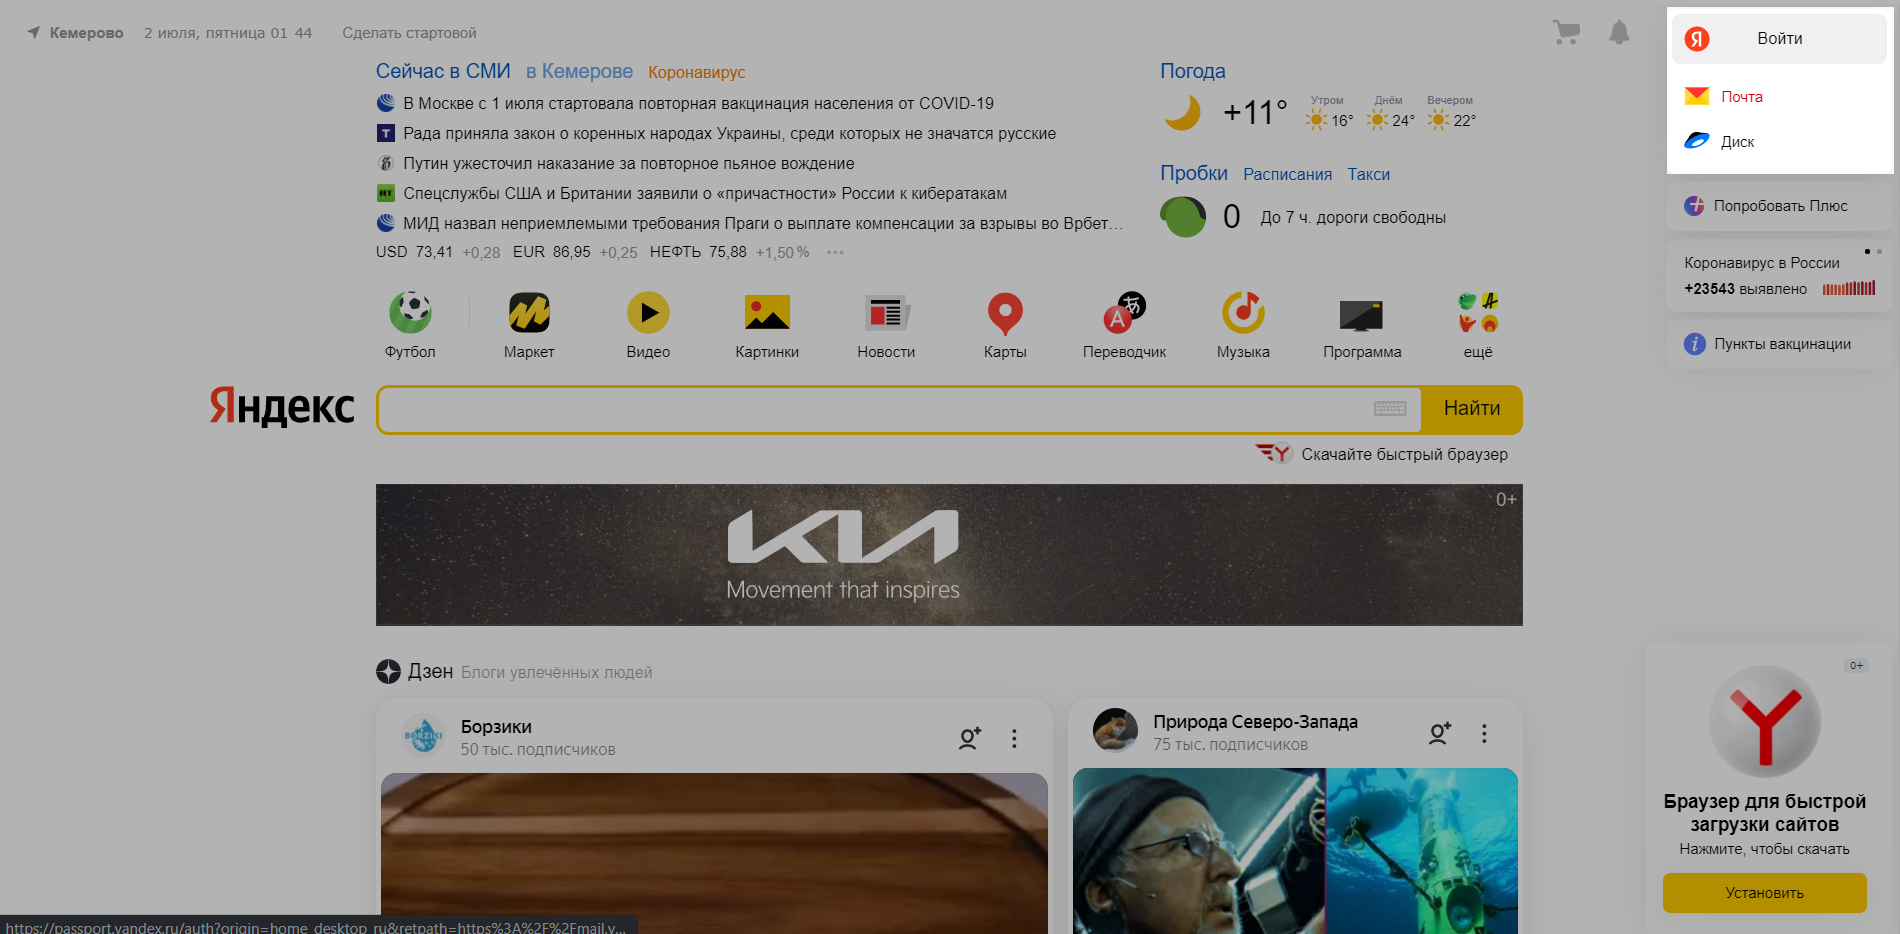 Главная страница «Яндекс», на которой можно зарегистрироваться в «Яндекс.ID»